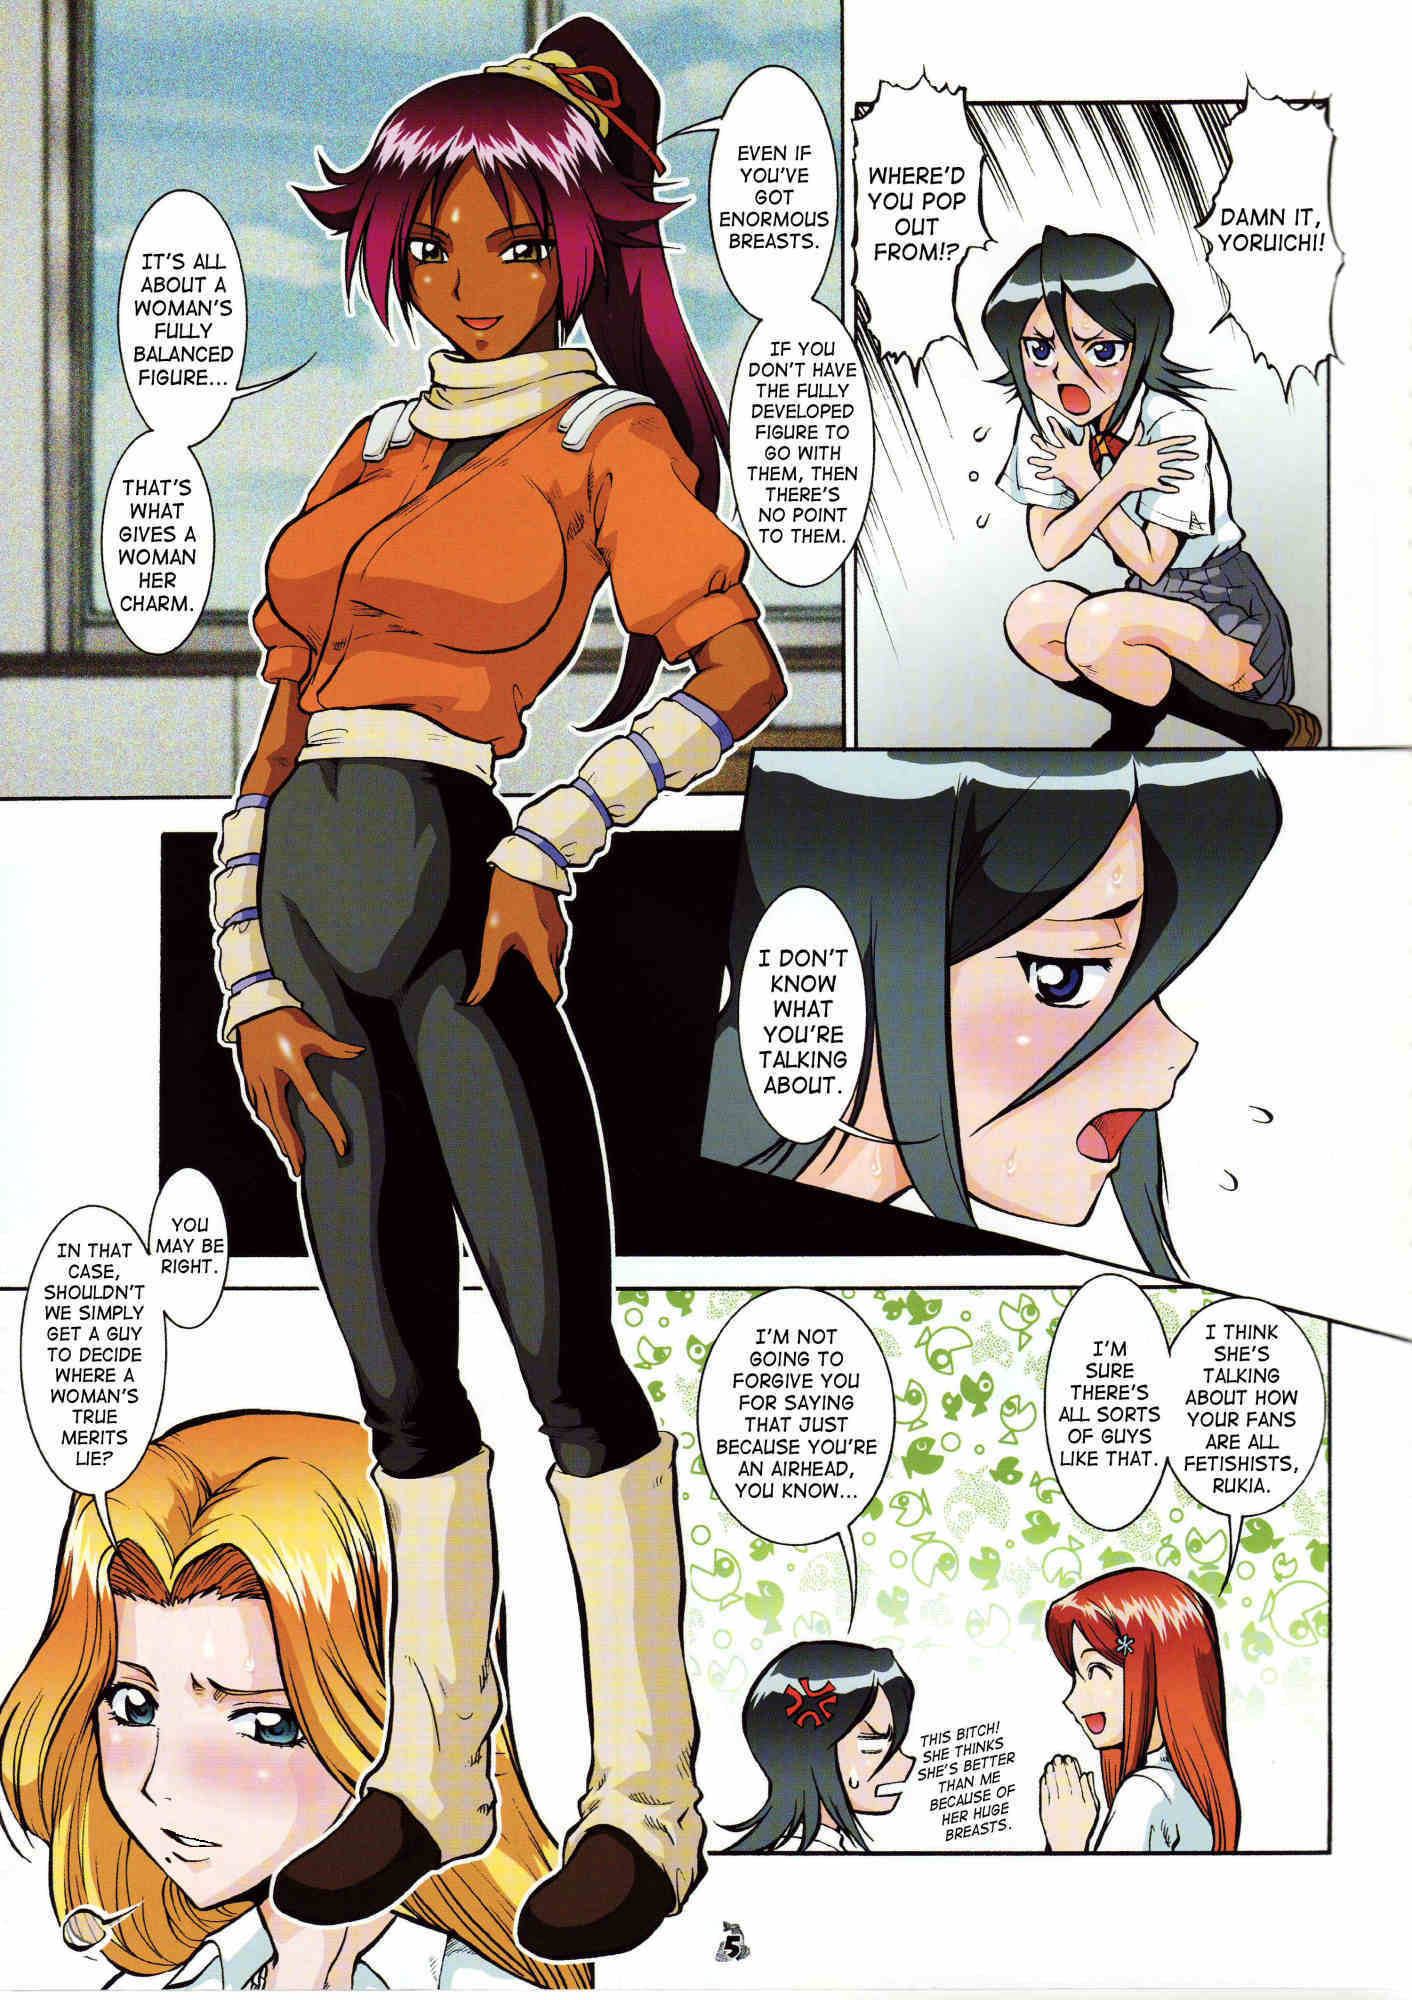 Bleach Hentai Lesbians Sex Comics - Bleach- Barietchi, Bleach Hentai - Porn Cartoon Comics